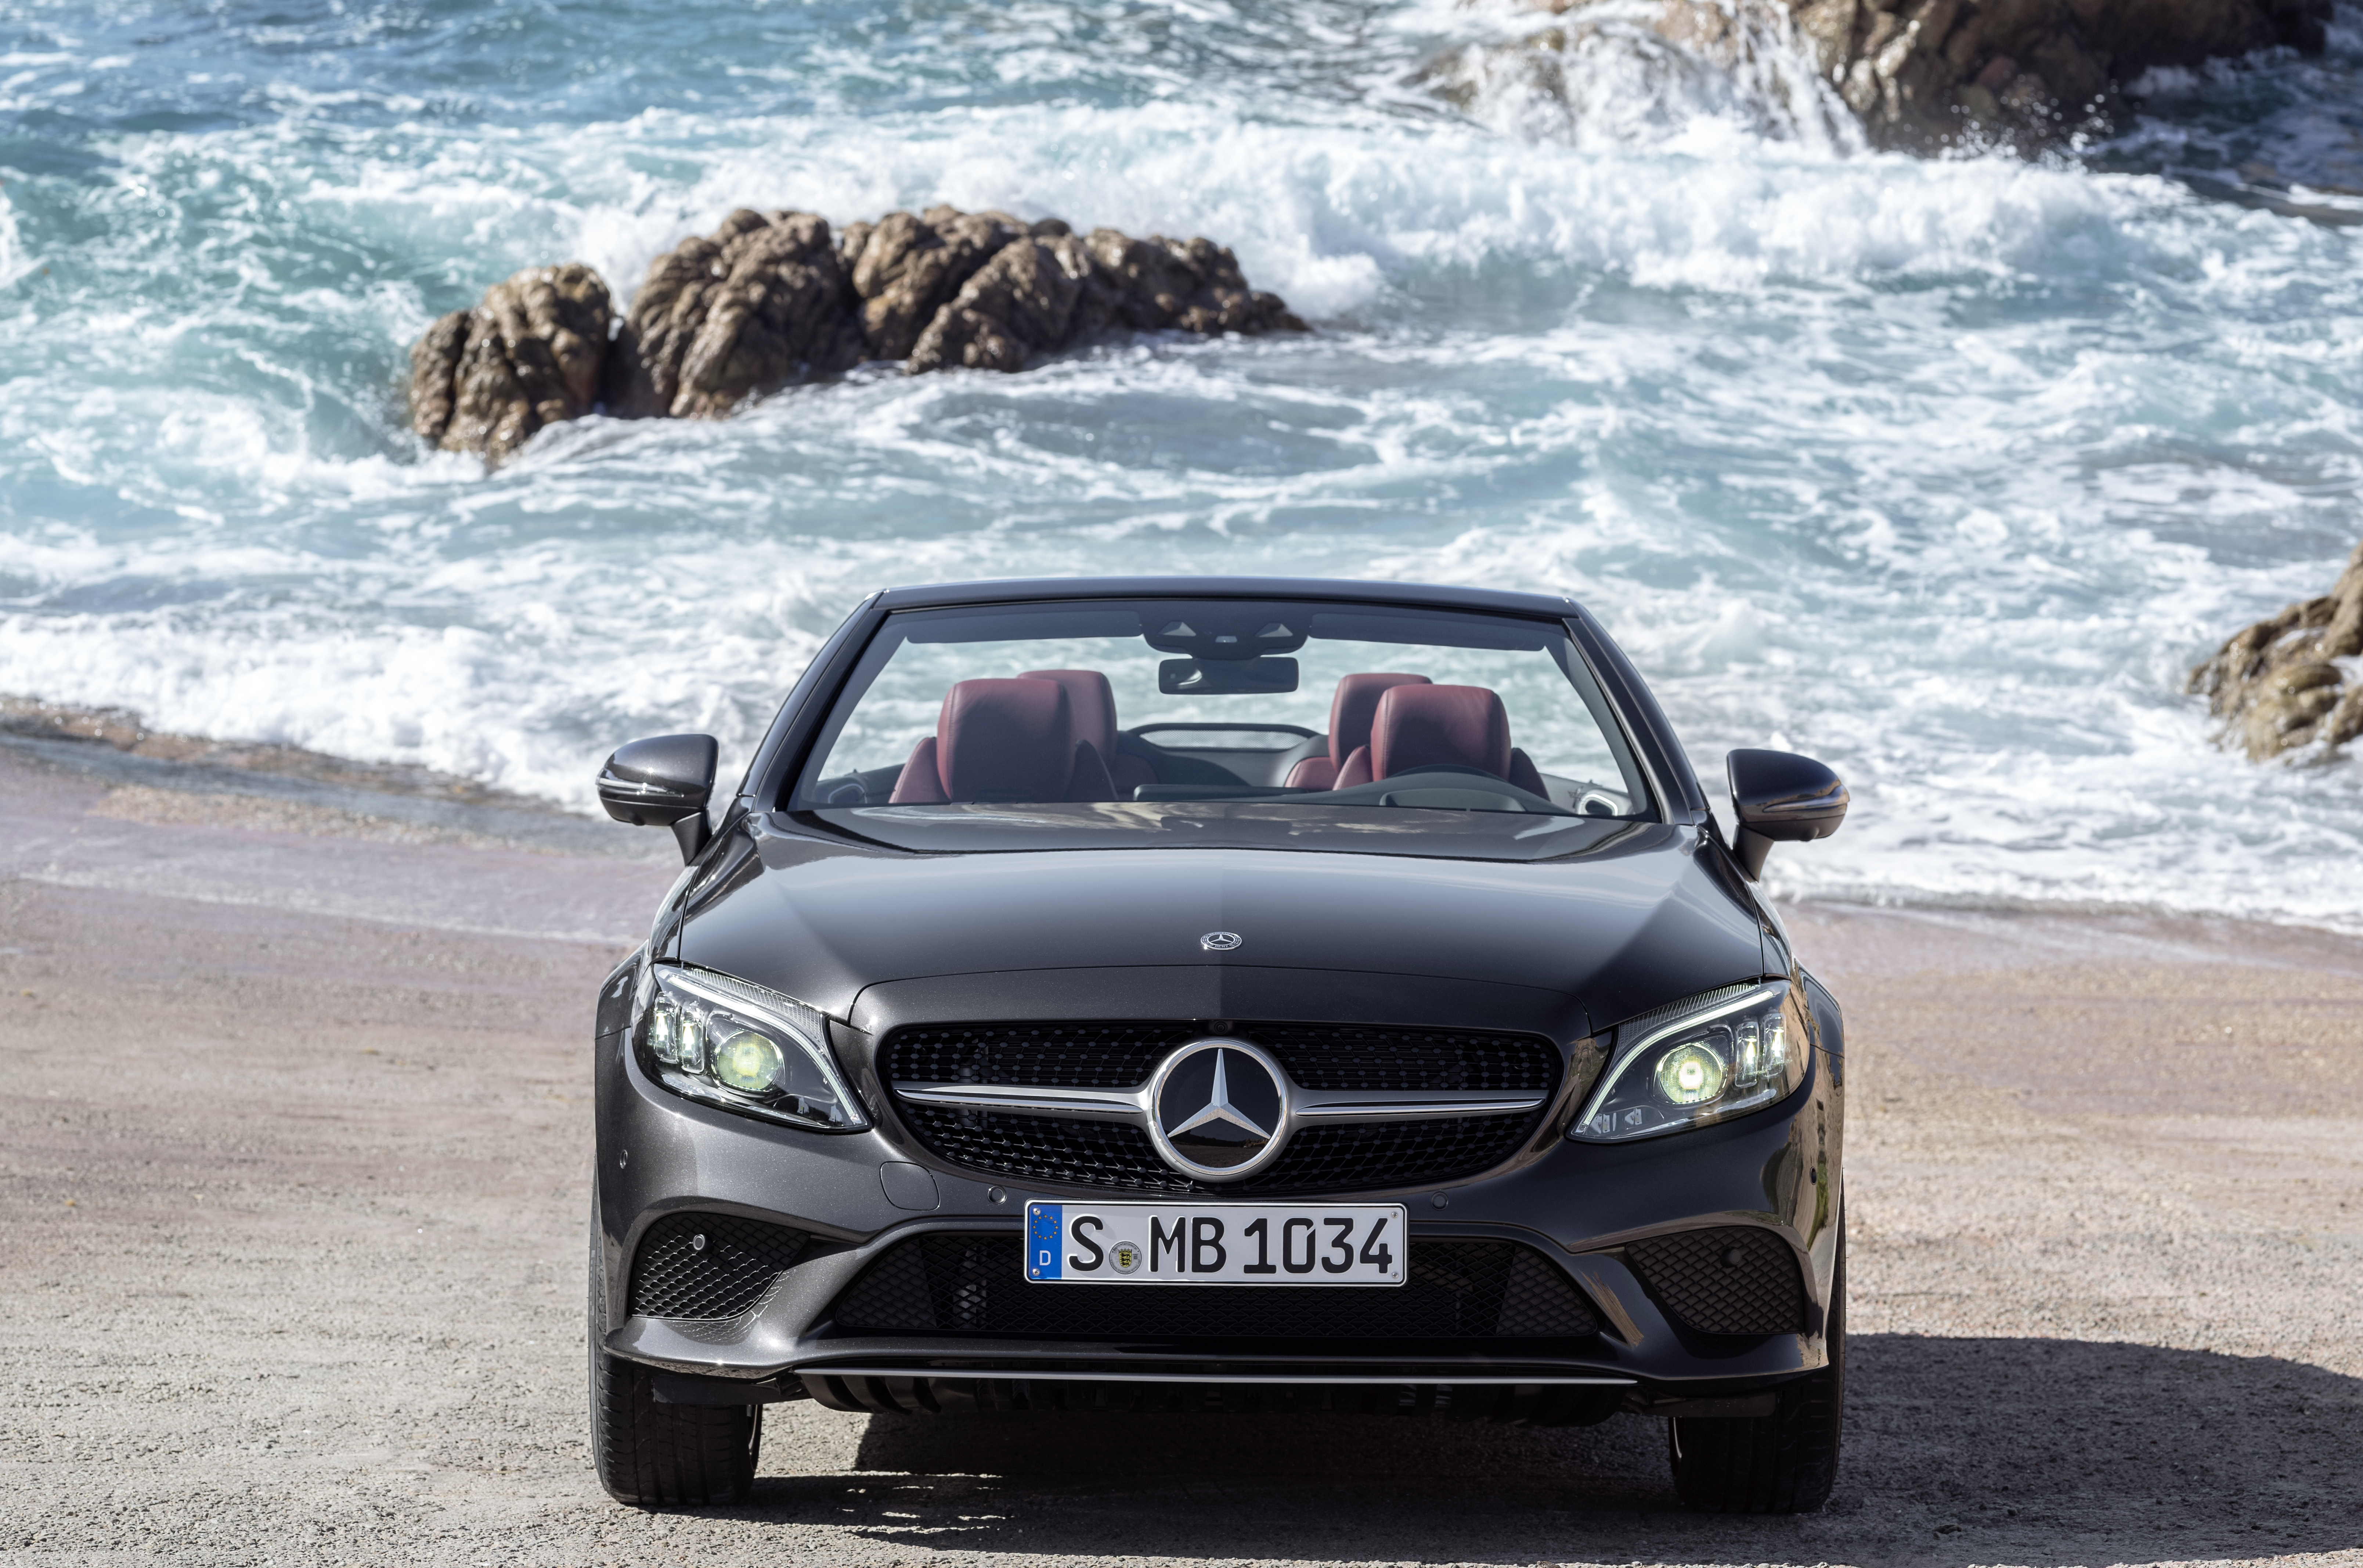 Avis Prestige Collection 2019: arriva l'alto di gamma Mercedes-Benz